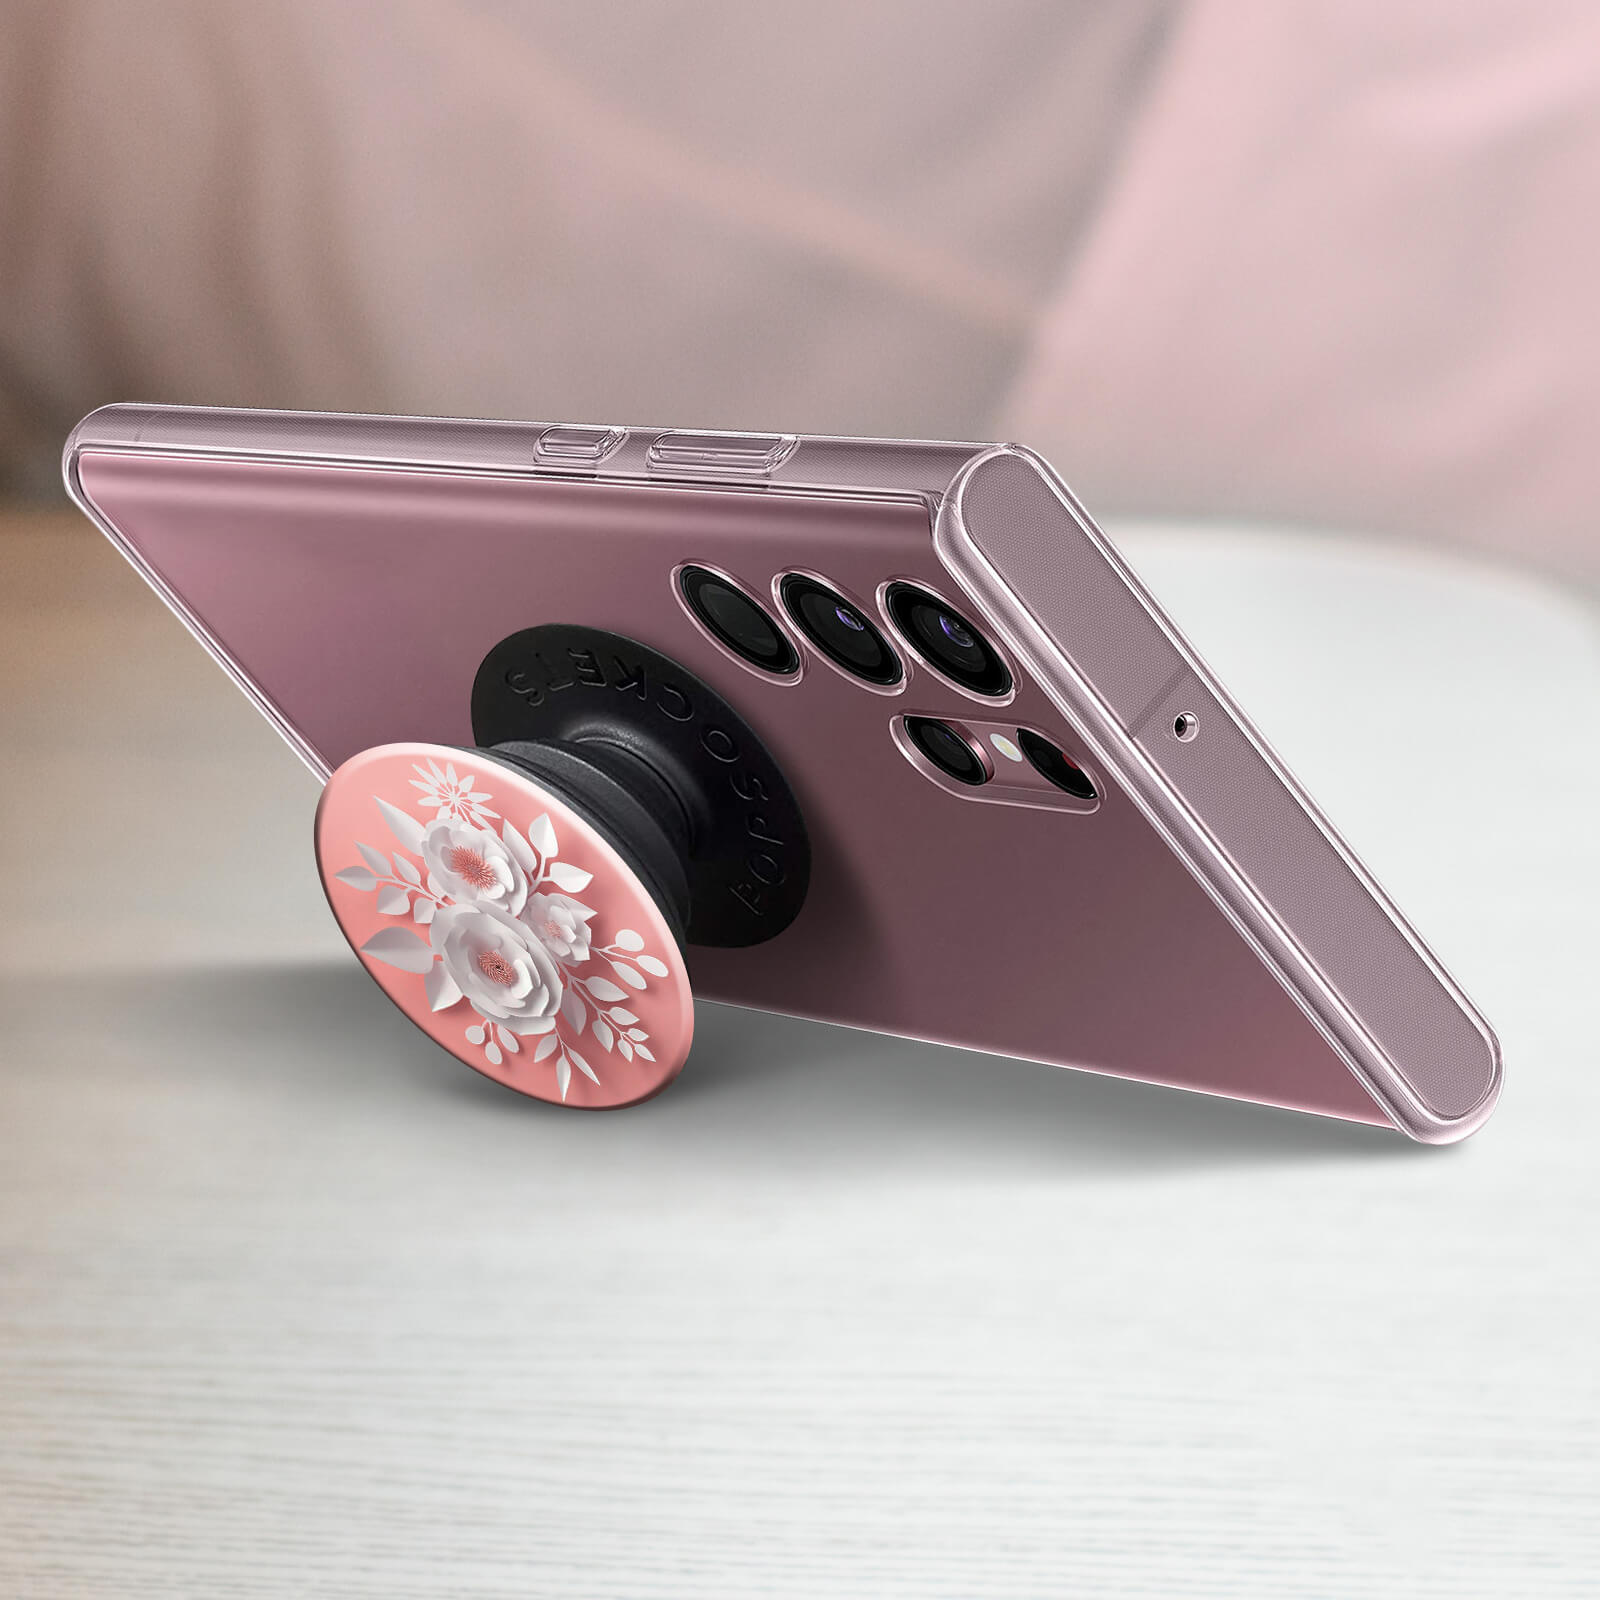 POPSOCKETS Handy-Griff mit Bunt Flower PopGrip Design